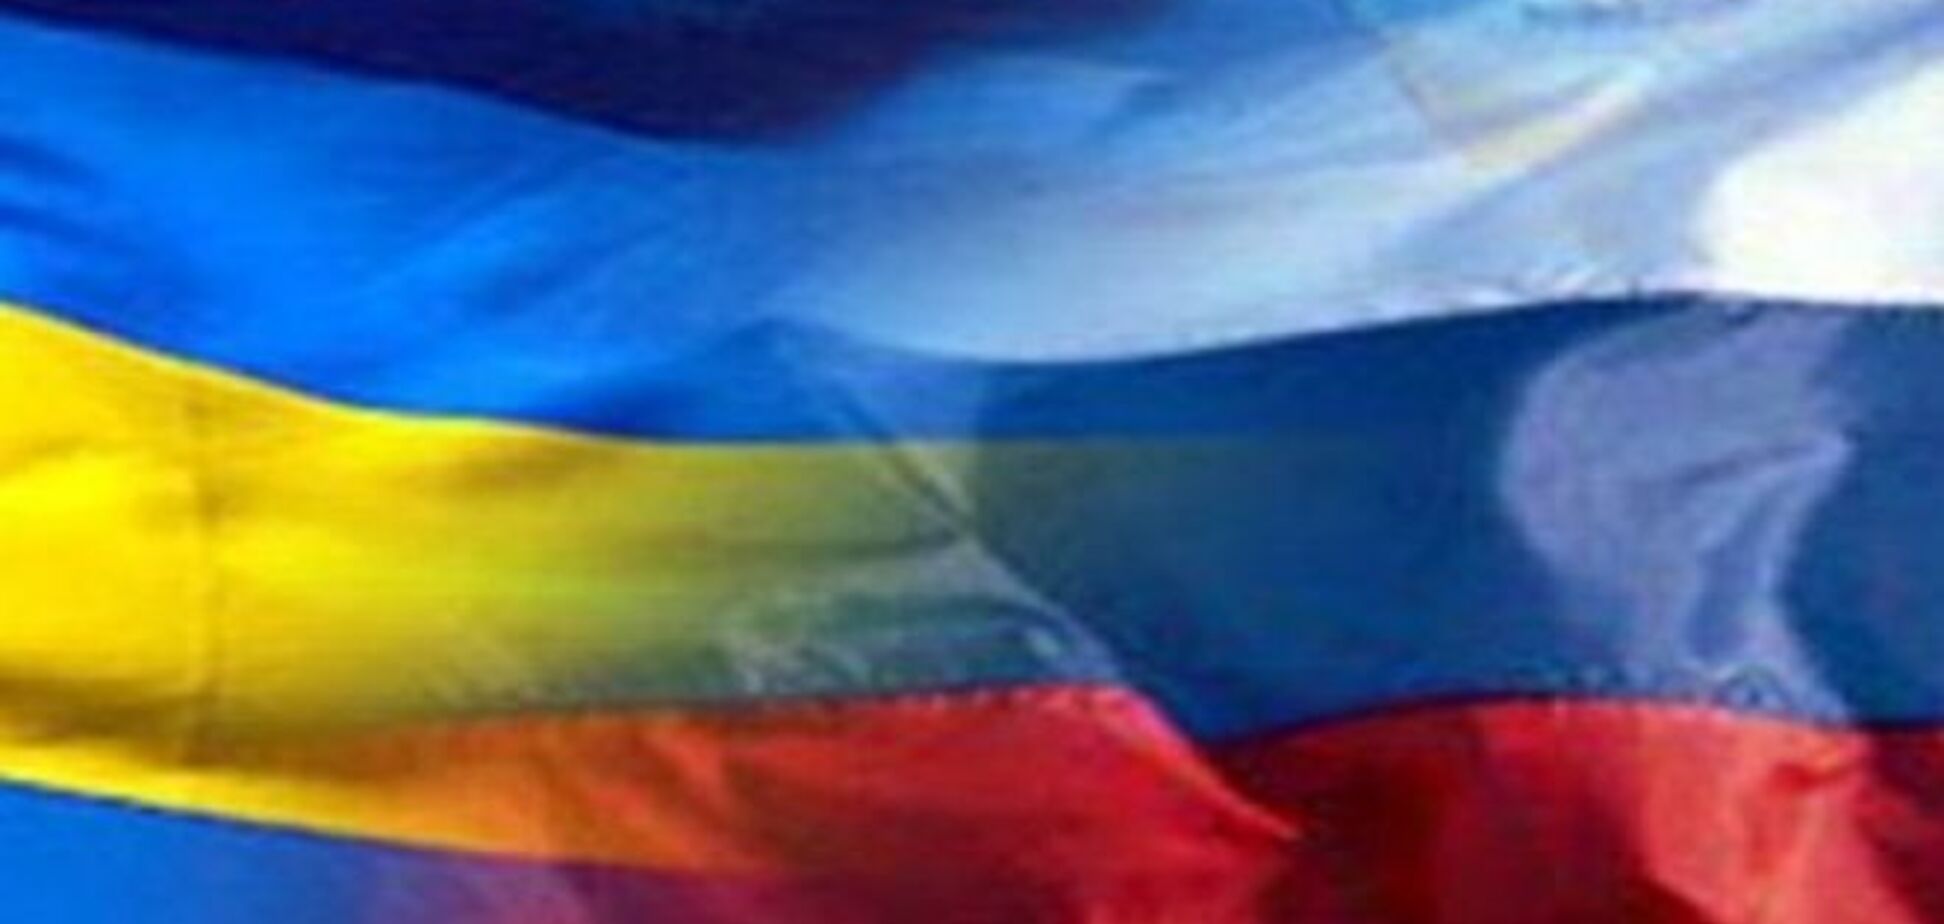 Британский эксперт: через 'Сбербанк' Россия ведет информационную кампанию против Украины